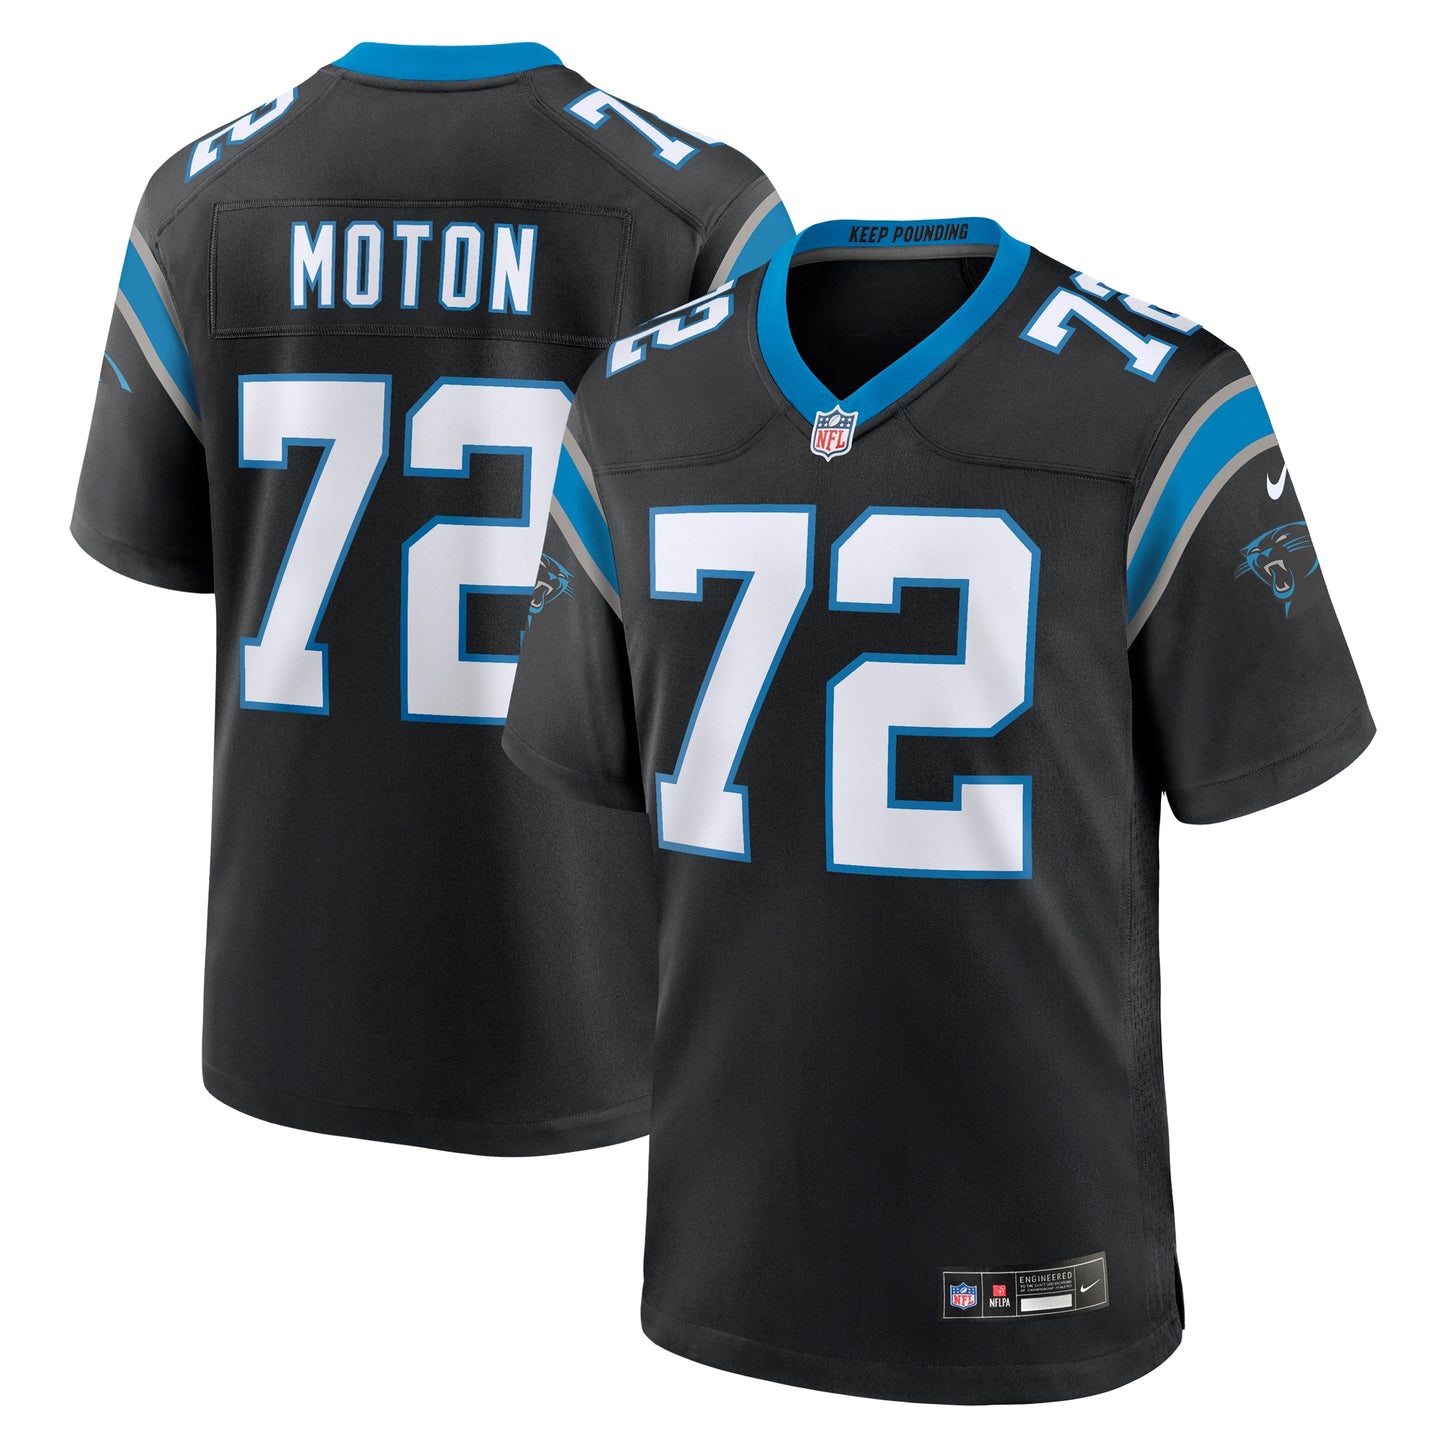 Taylor Moton Carolina Panthers Nike Team Game Jersey - Black